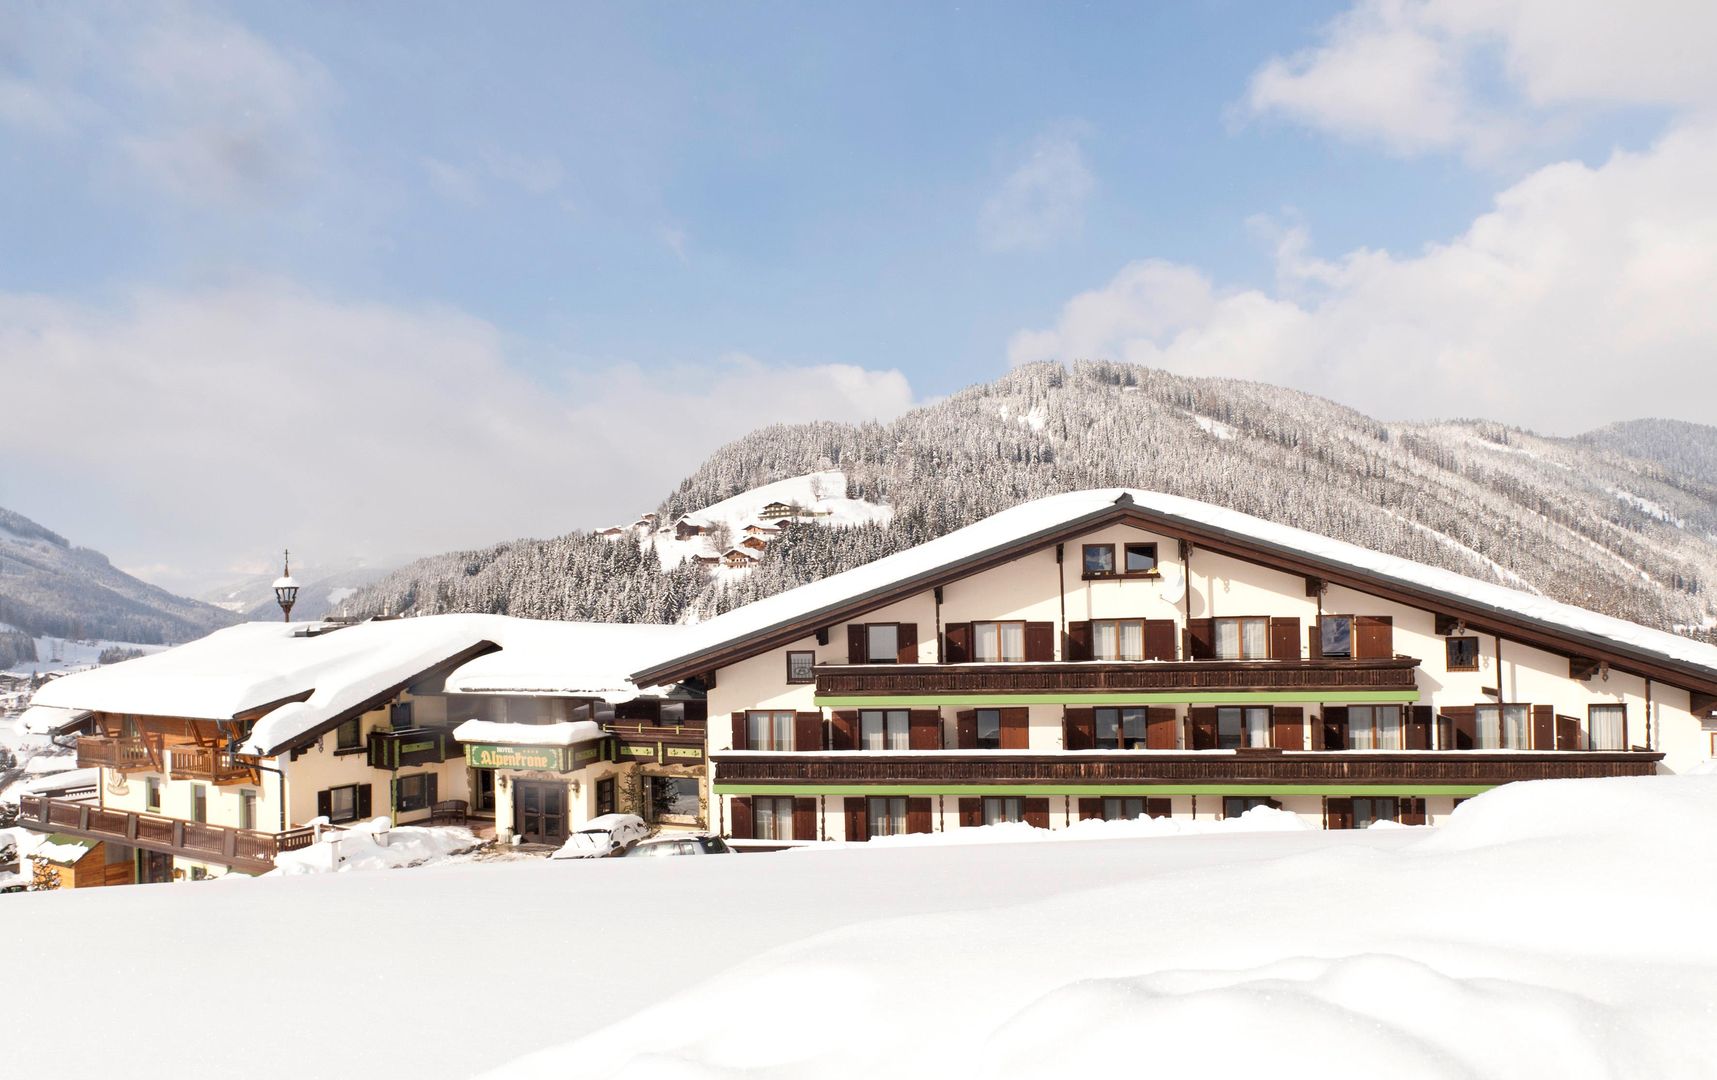 Meer info over Hotel Alpenkrone  bij Wintertrex